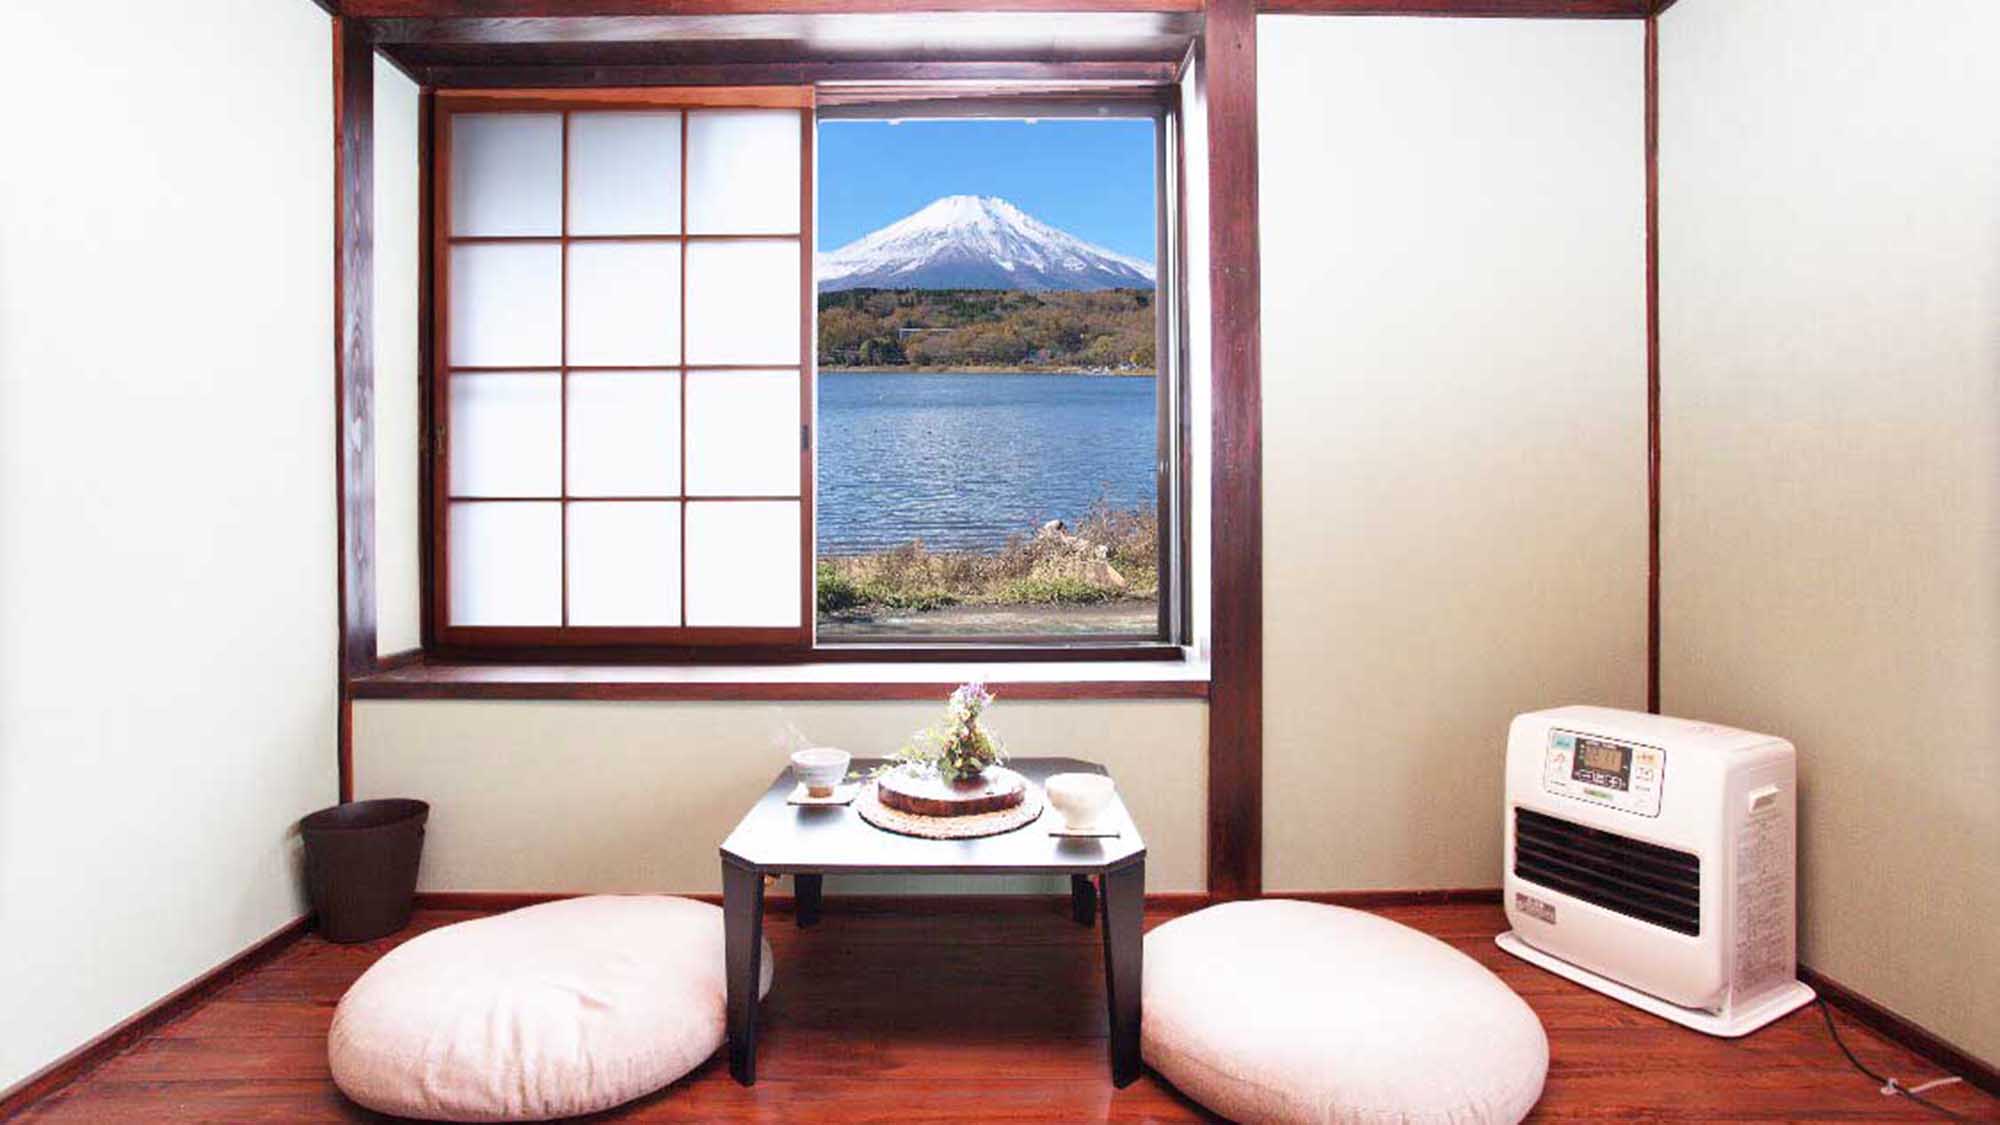 ・「和室の一例」お茶を飲みながら、窓外の絶景をお楽しみください。